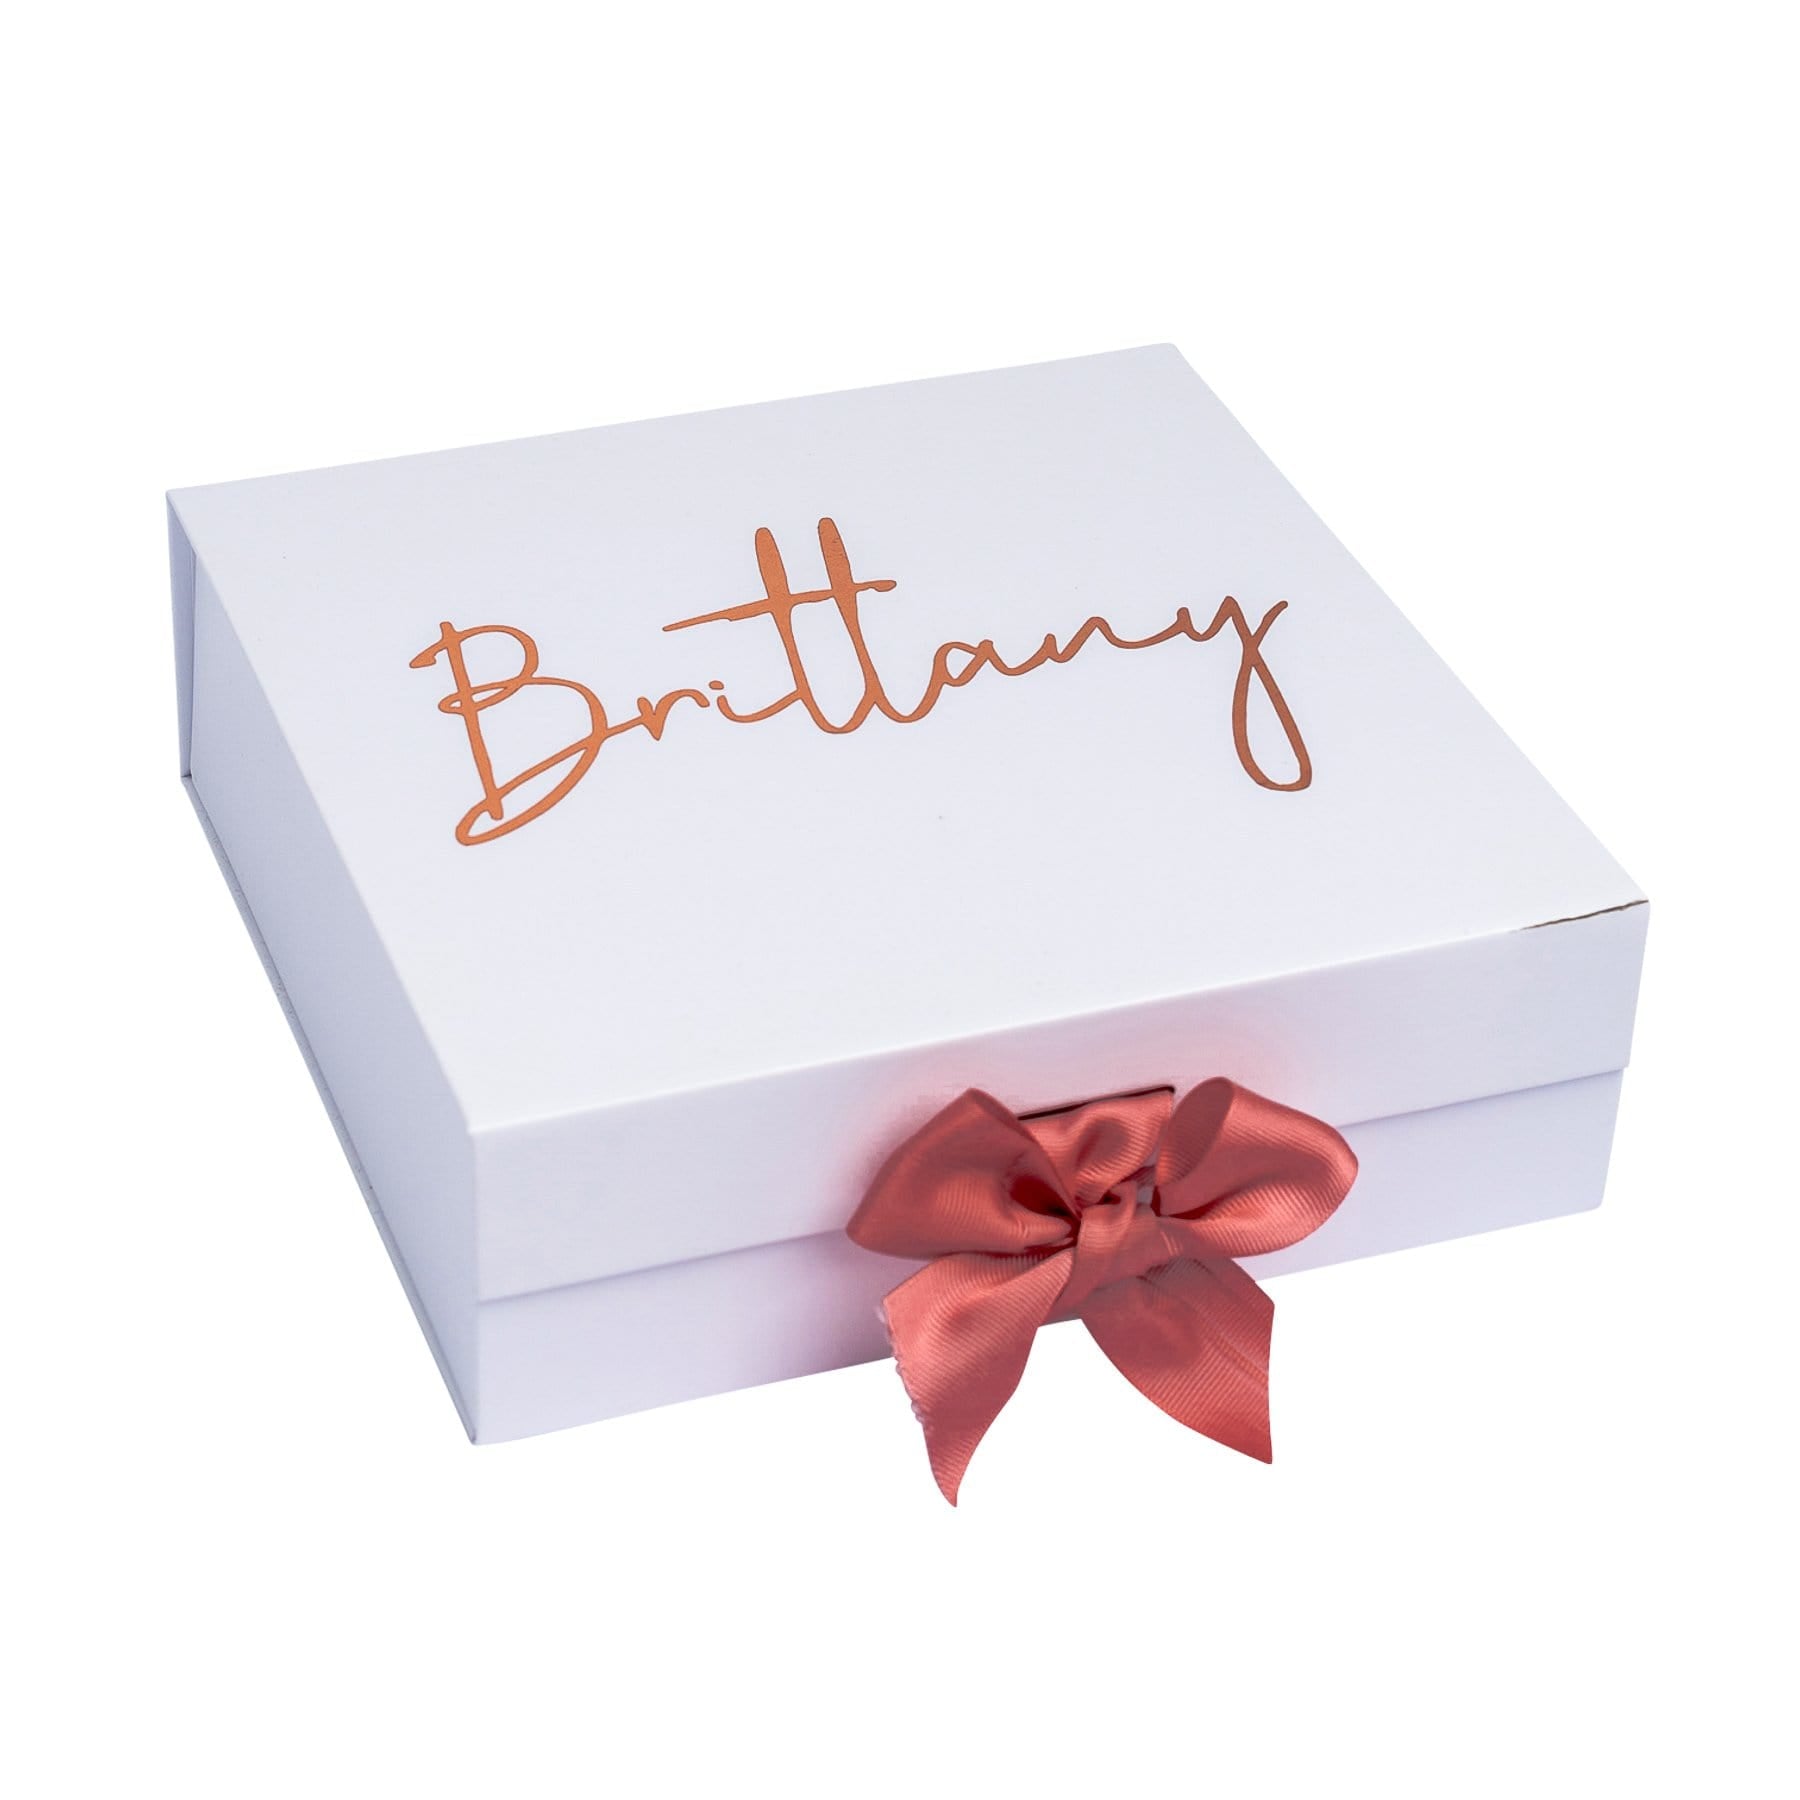 Birthday Gift Chocolate Box - Personalised with Photo and Name – Chocorish